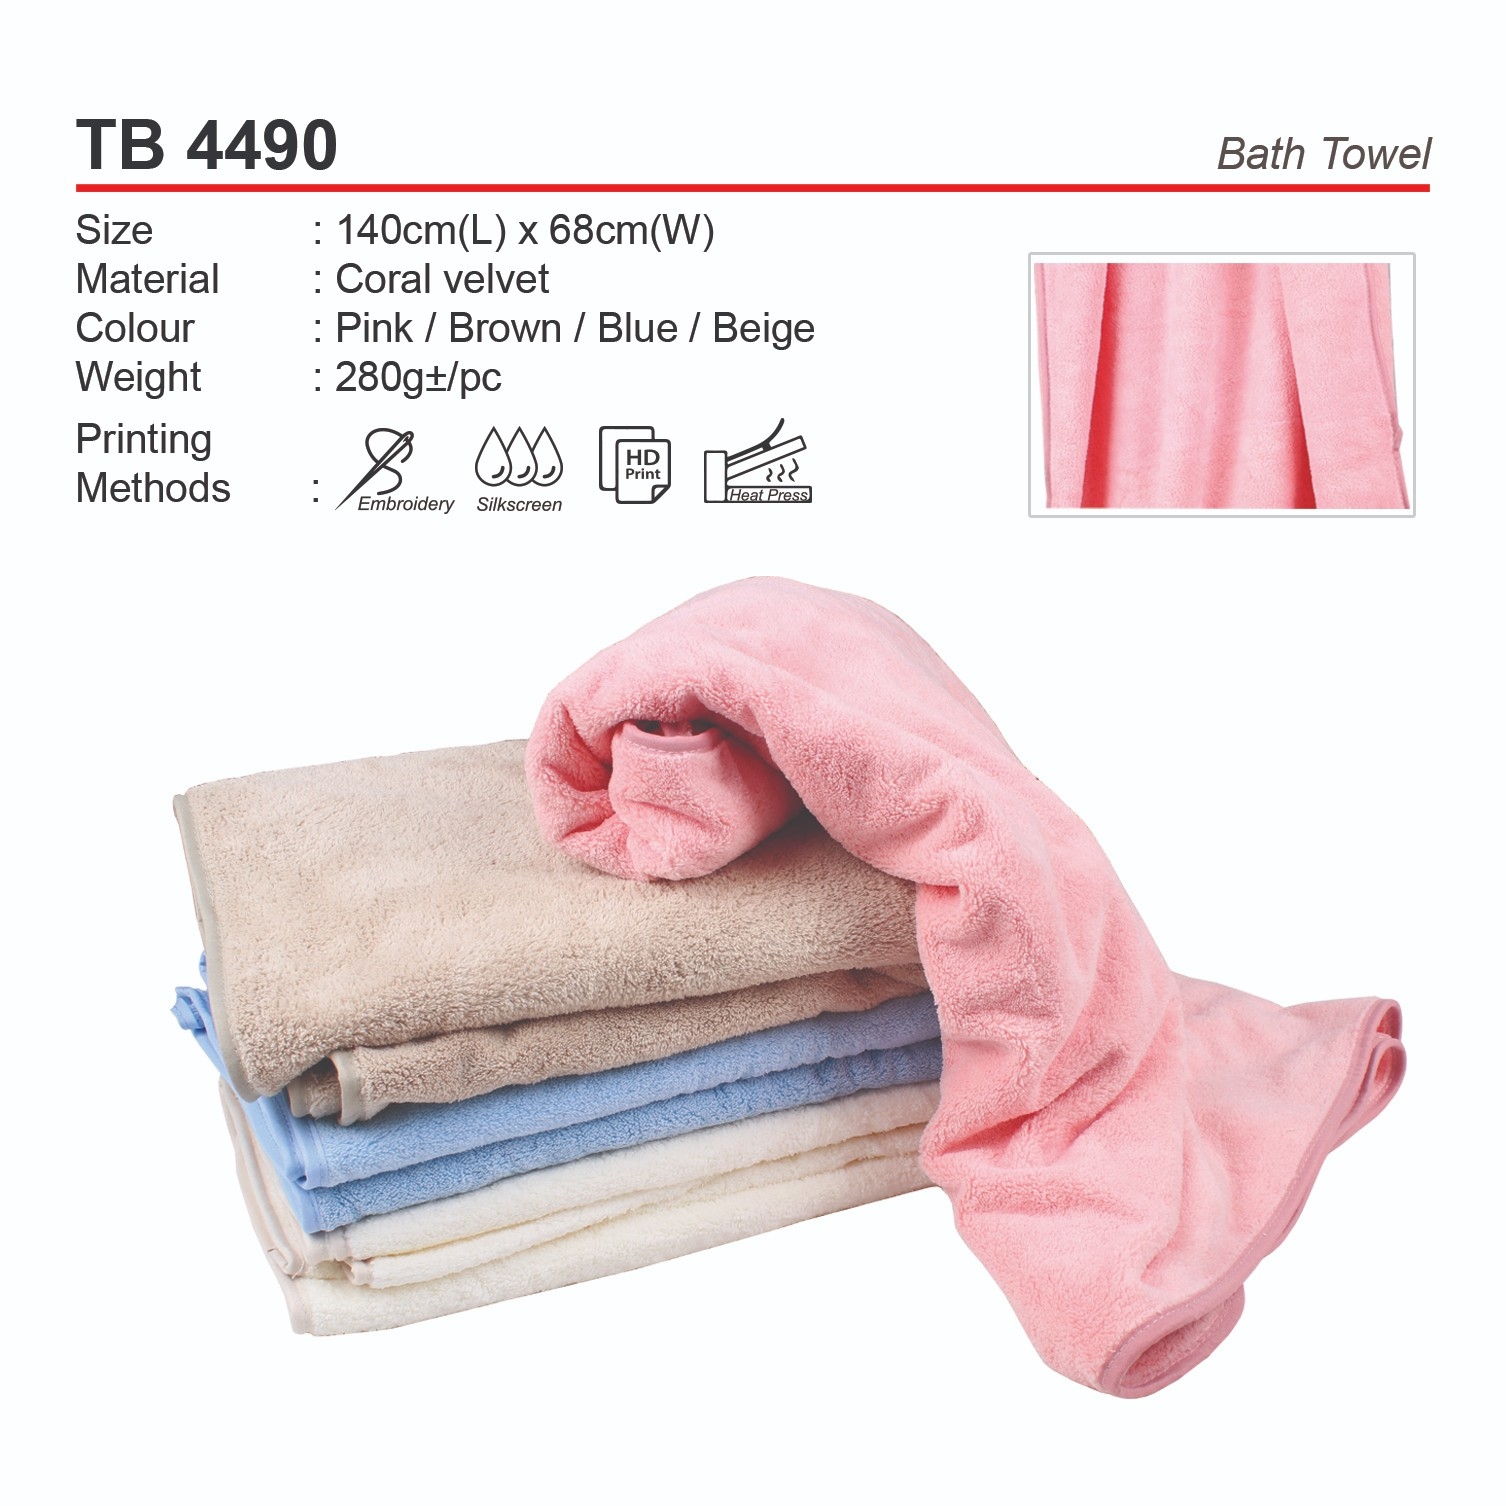 D*TB 4490 Bath Towel (A)